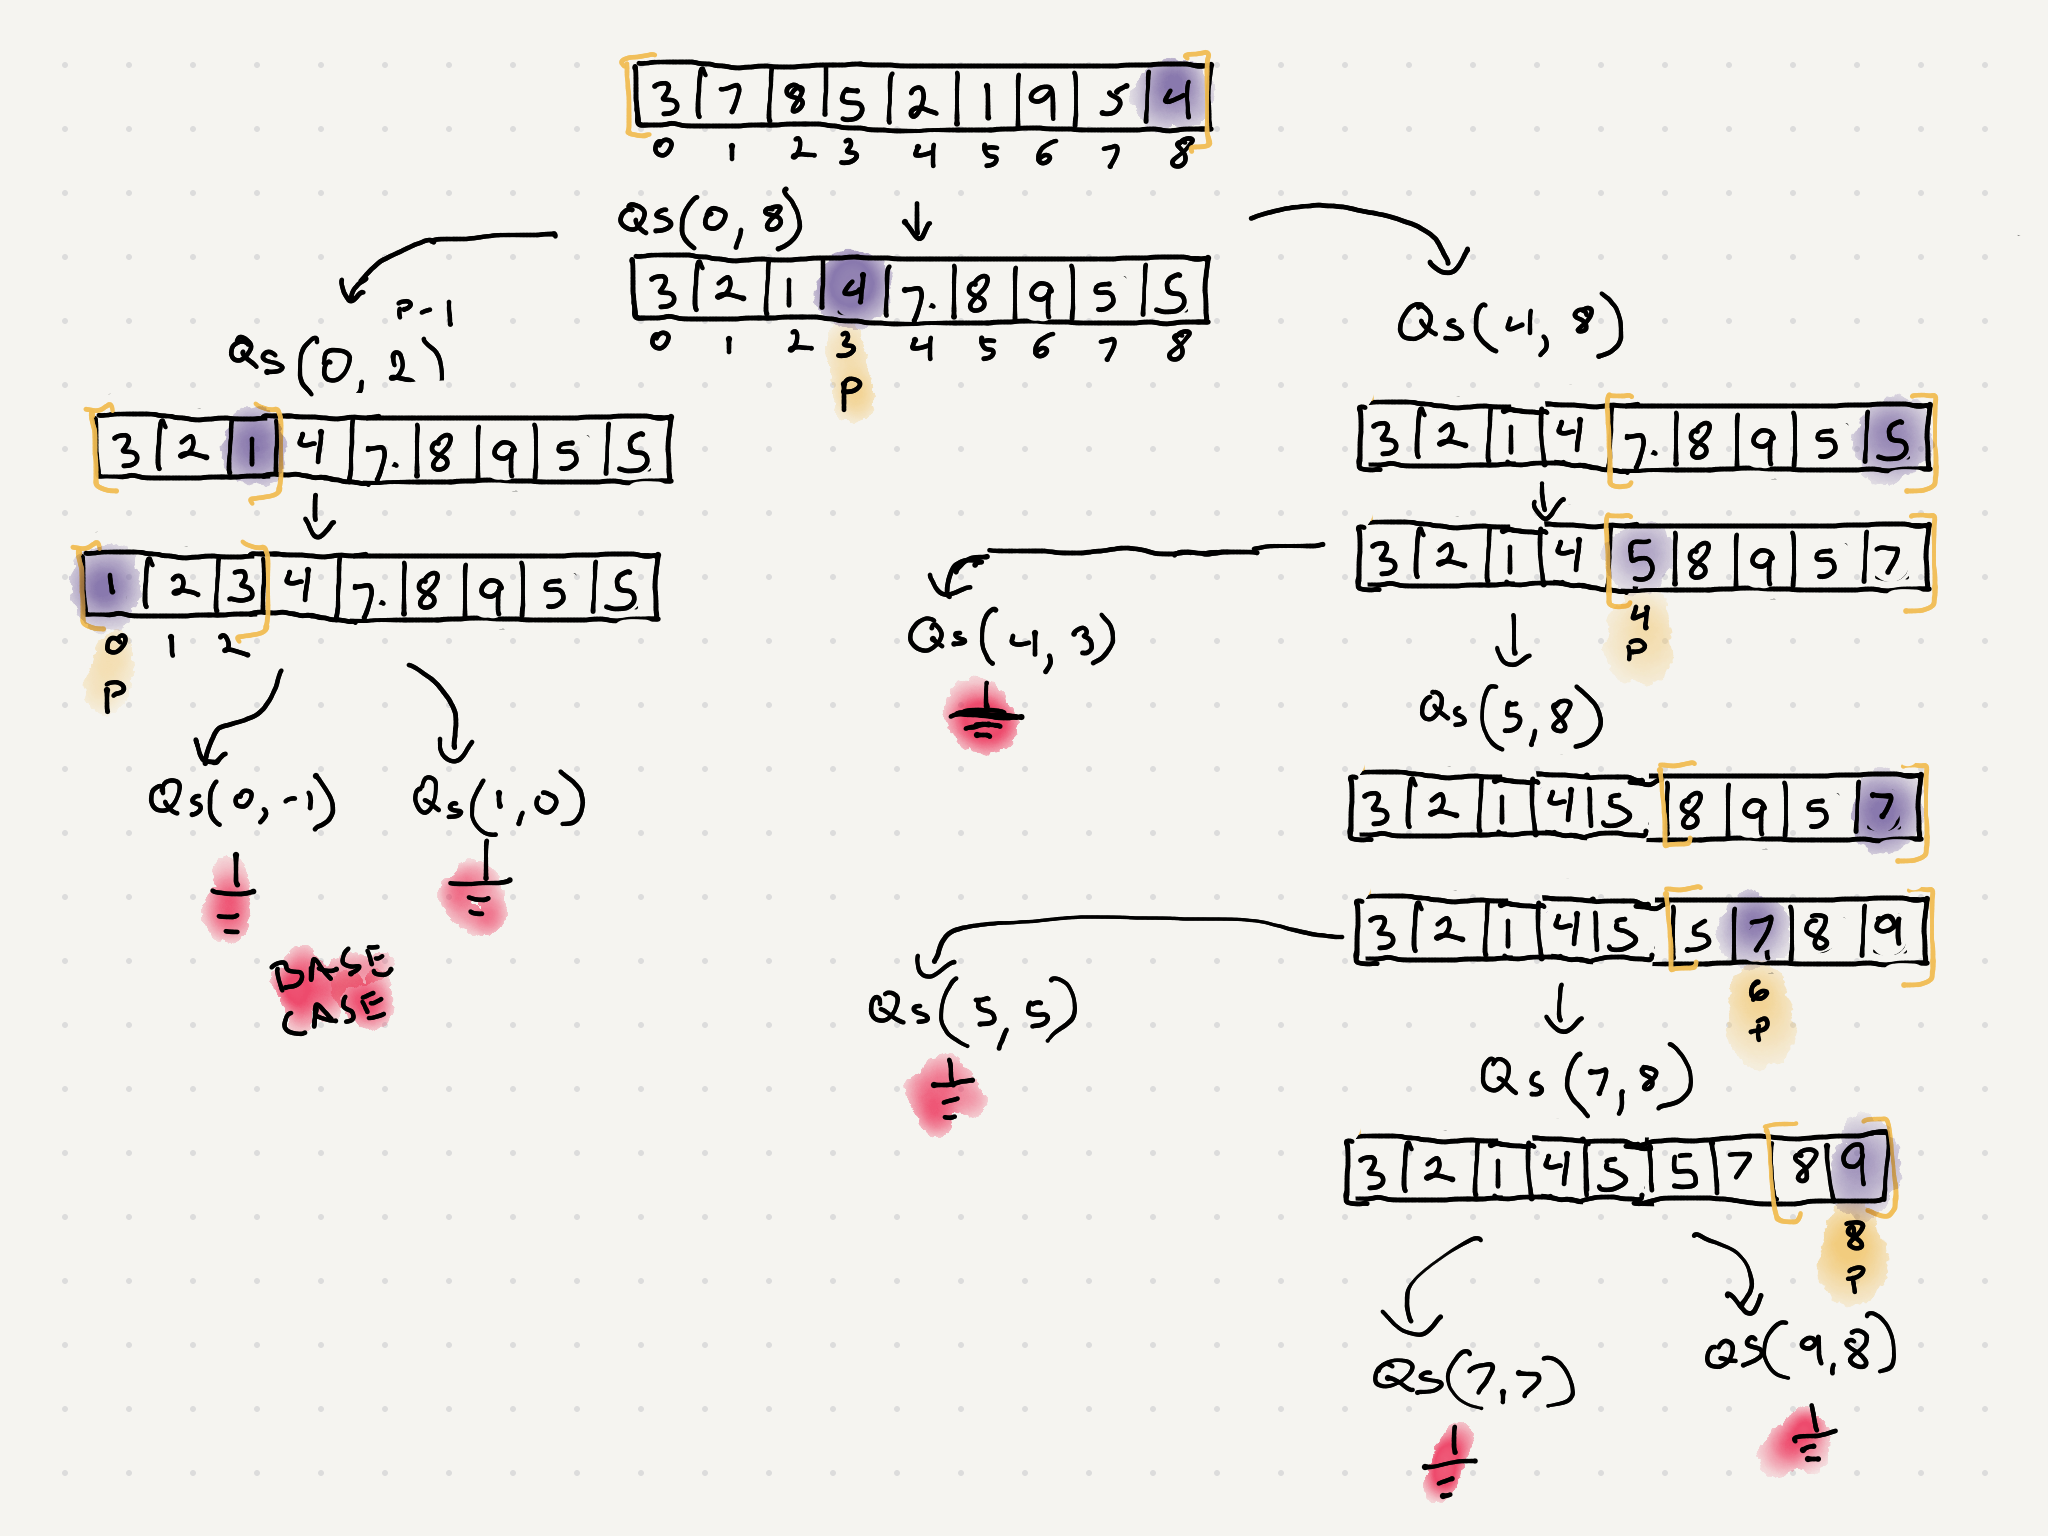 recursion tree